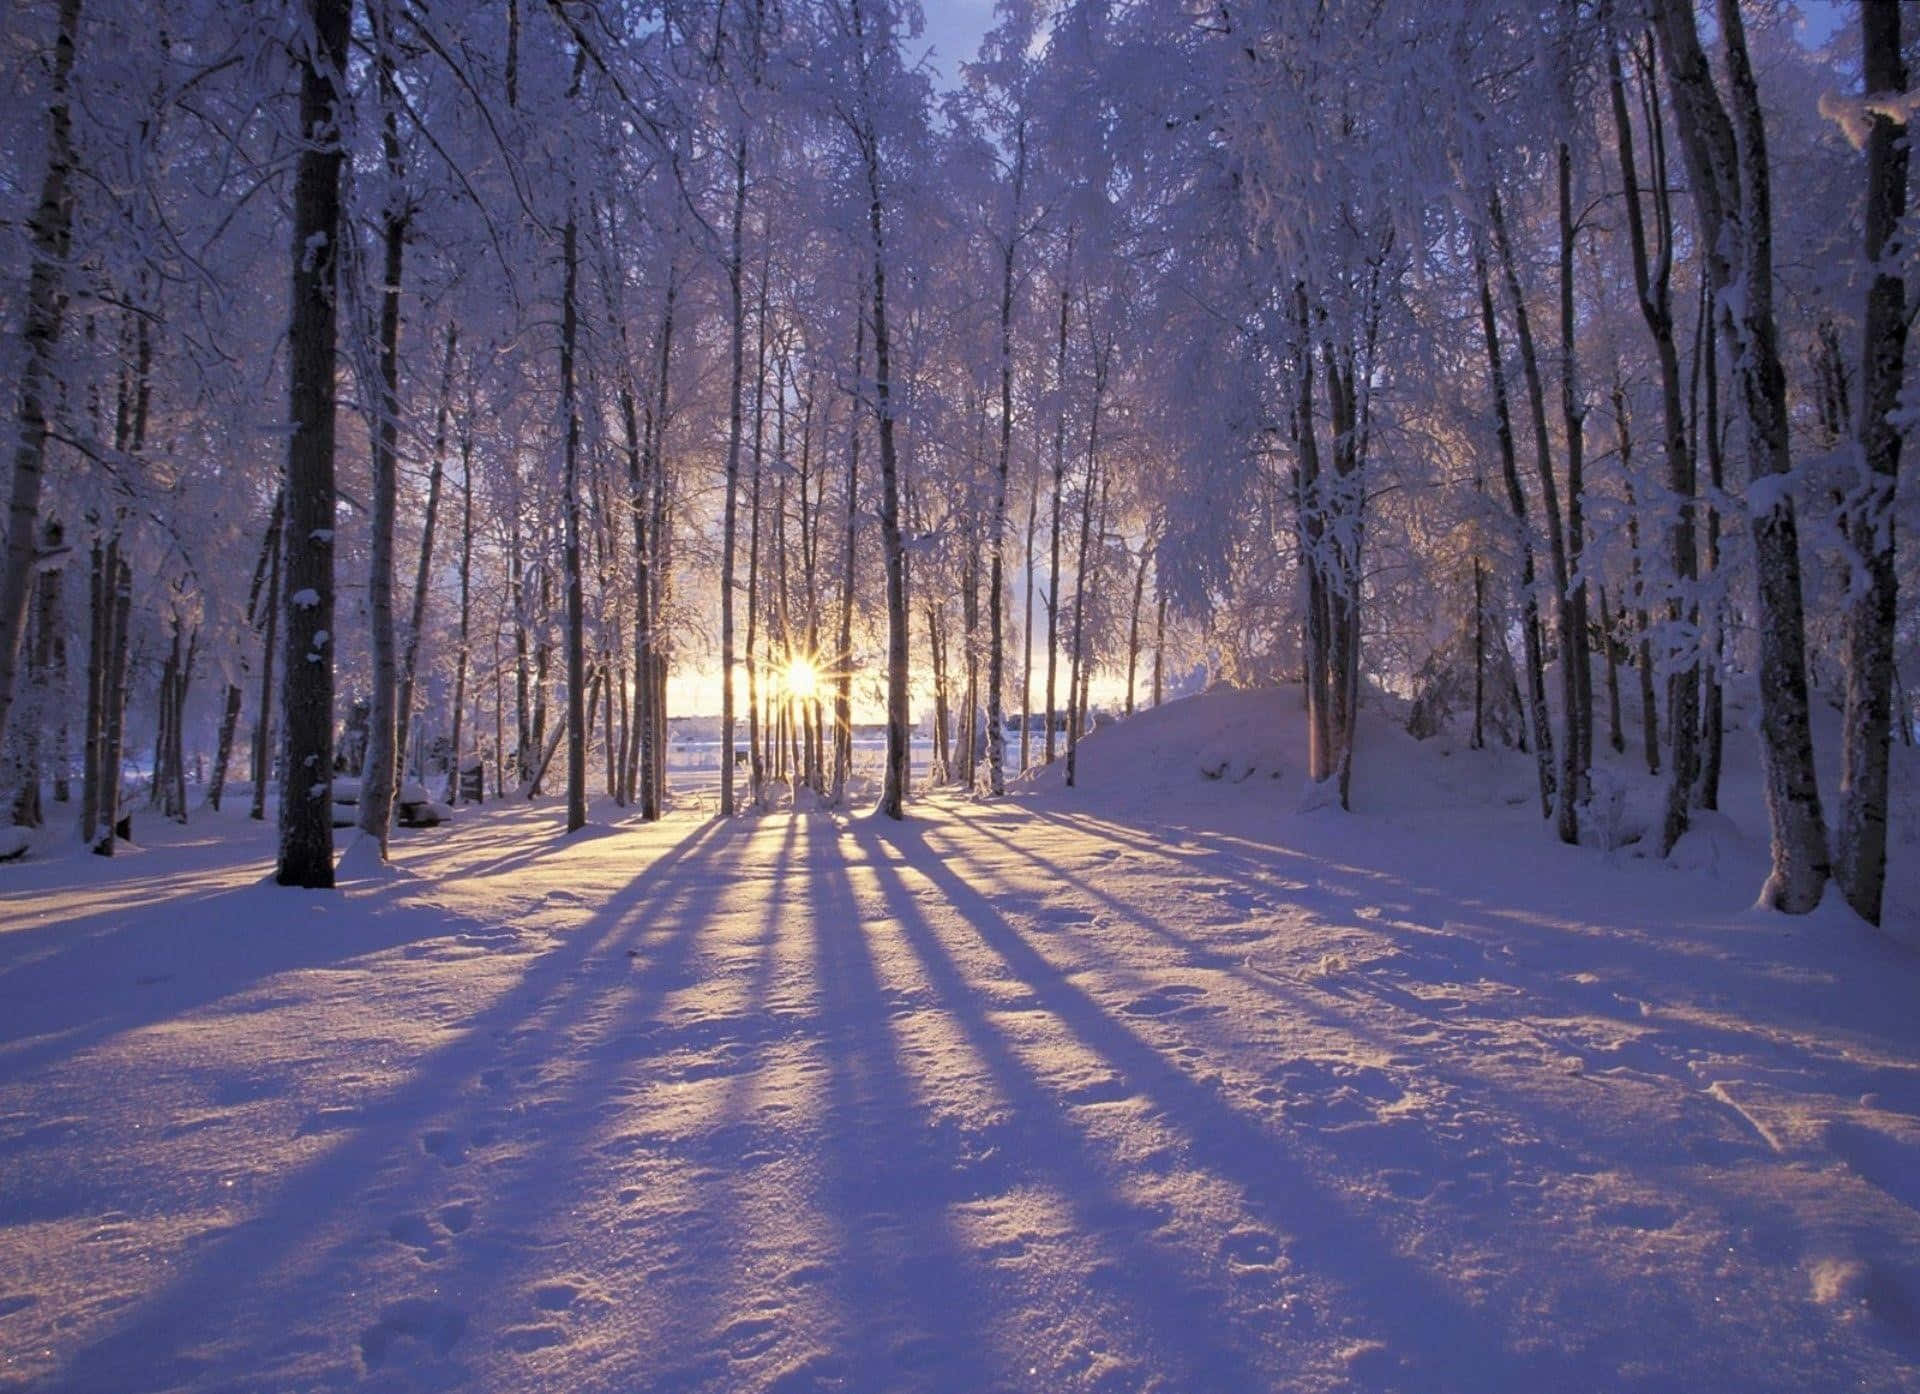 Winter Wonderland - Snowy Landscape & Frozen Trees